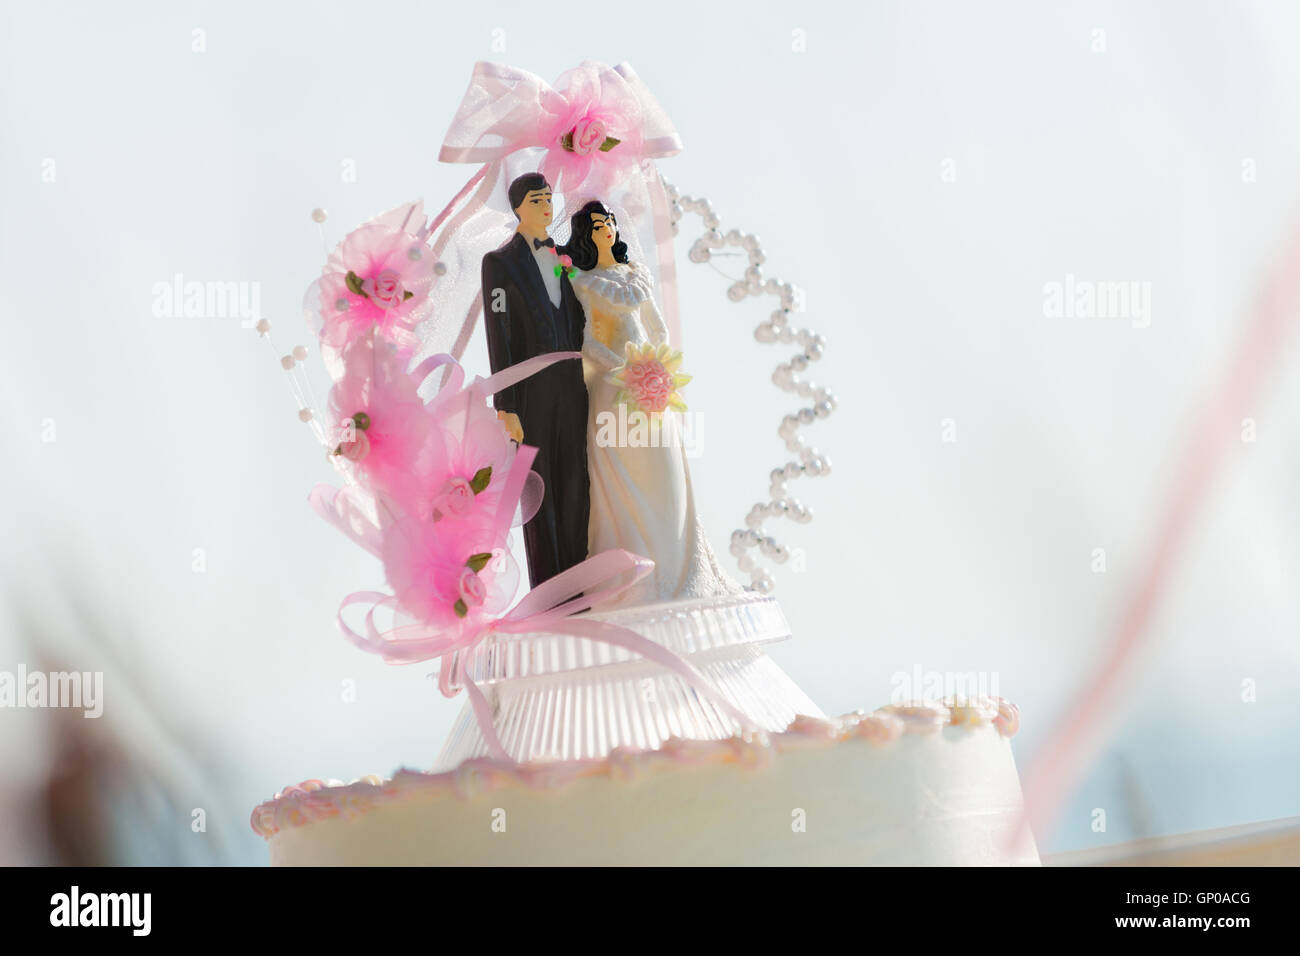 Puppe Mi der Braut und des Bräutigams auf eine Hochzeitstorte, die die Verpflichtung zur gegenseitigen Liebe symbolisiert. Stockfoto